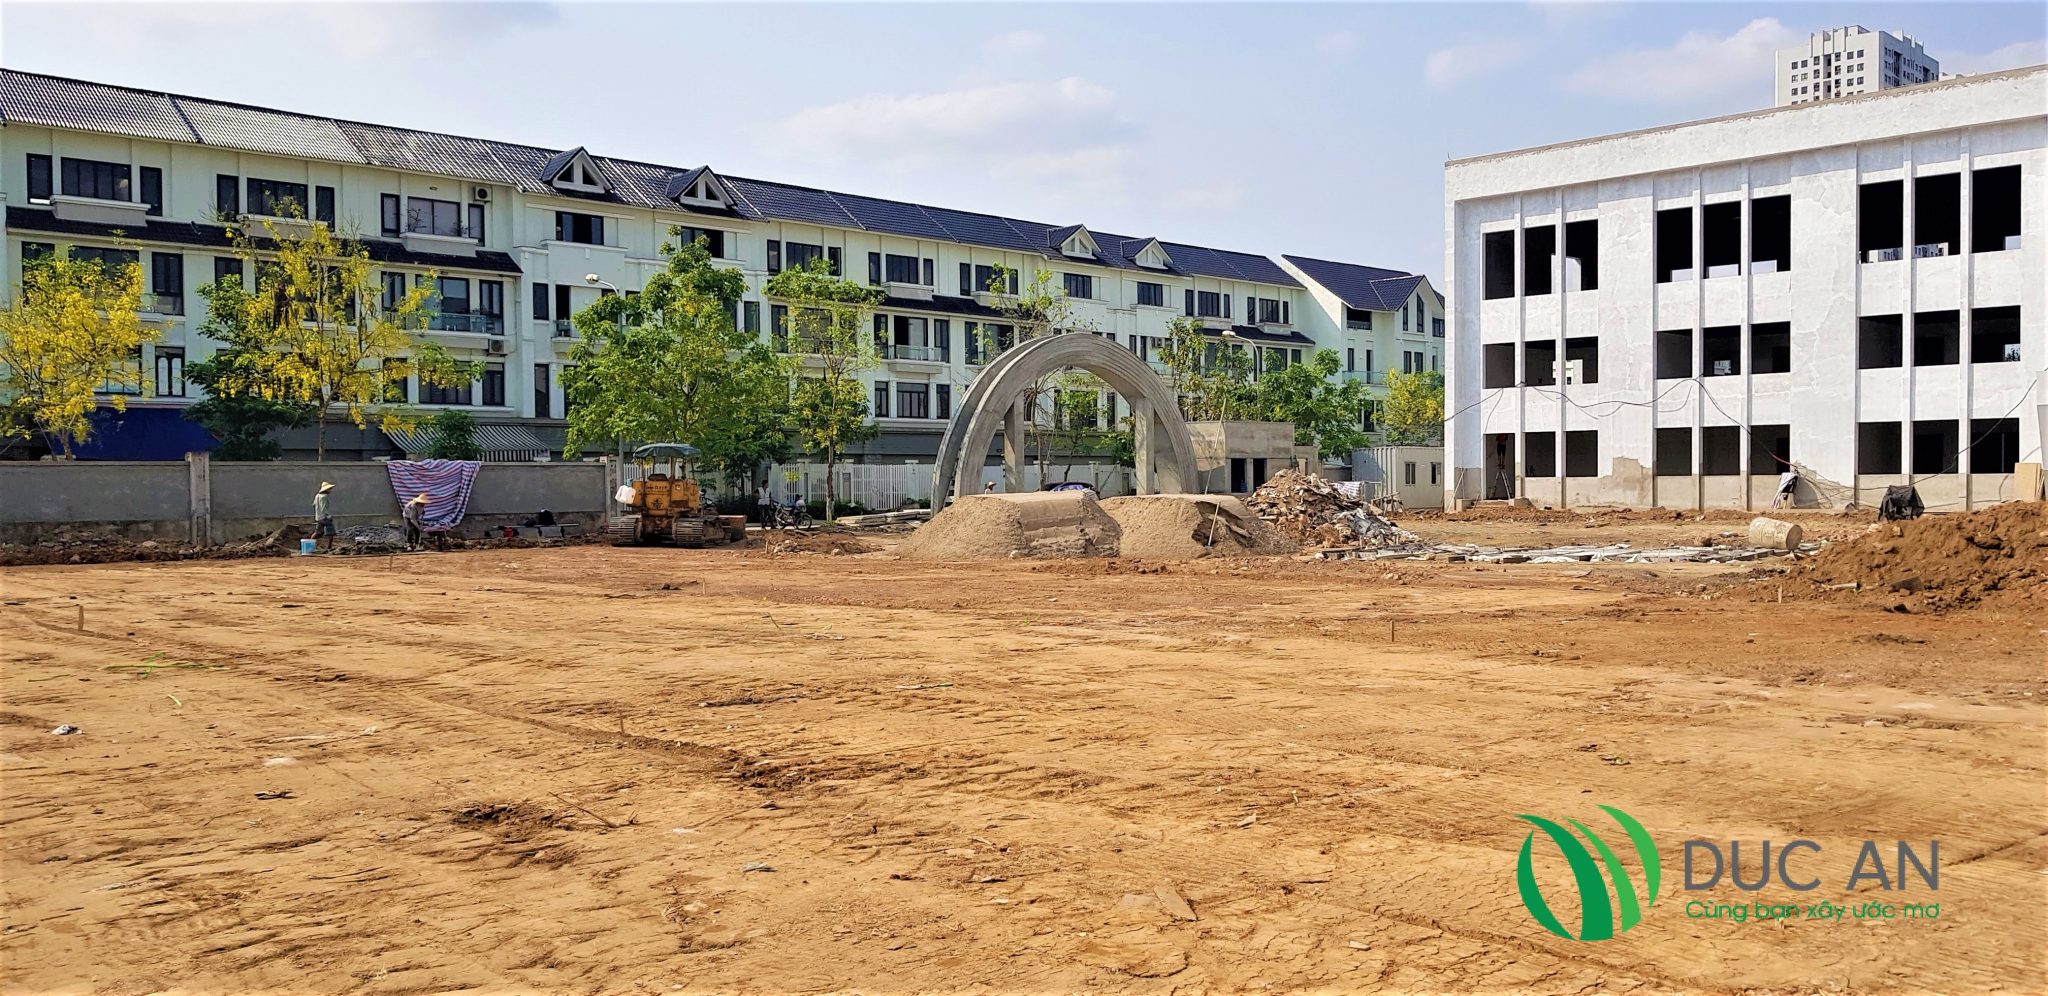 Dự án sân bóng đá cỏ nhân tạo tại trường liên cấp Lomonoxop Tây Hà Nội